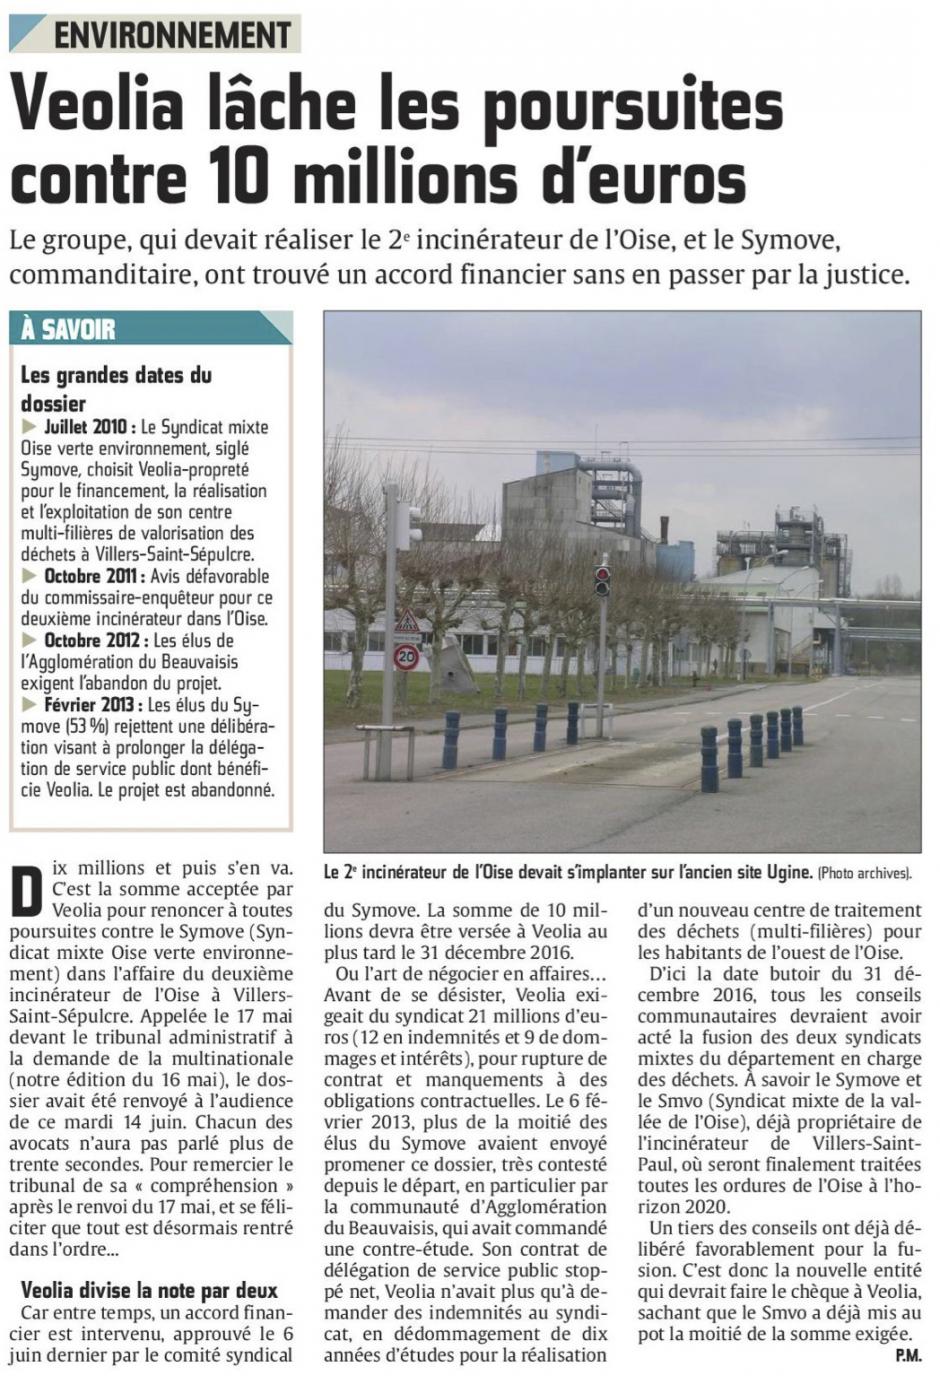 20160615-CP-Villers-Saint-Sépulcre-Veolia lâche les poursuites contre 10 millions d'euros